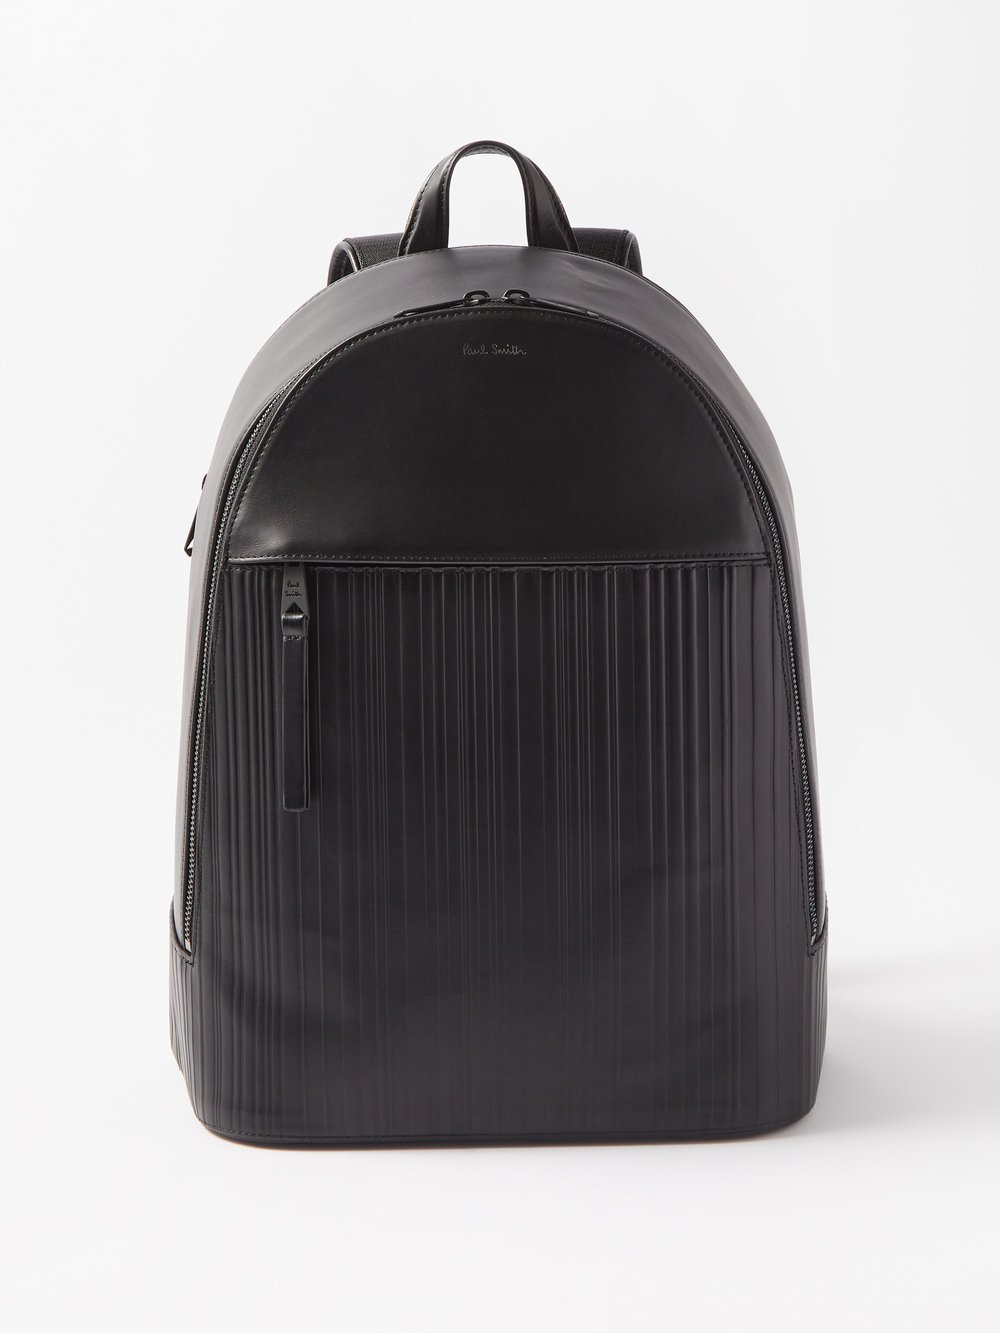 Кожаный рюкзак с тиснением signature stripe Paul Smith, черный набор из семи боксеров с полосками artist stripe paul smith